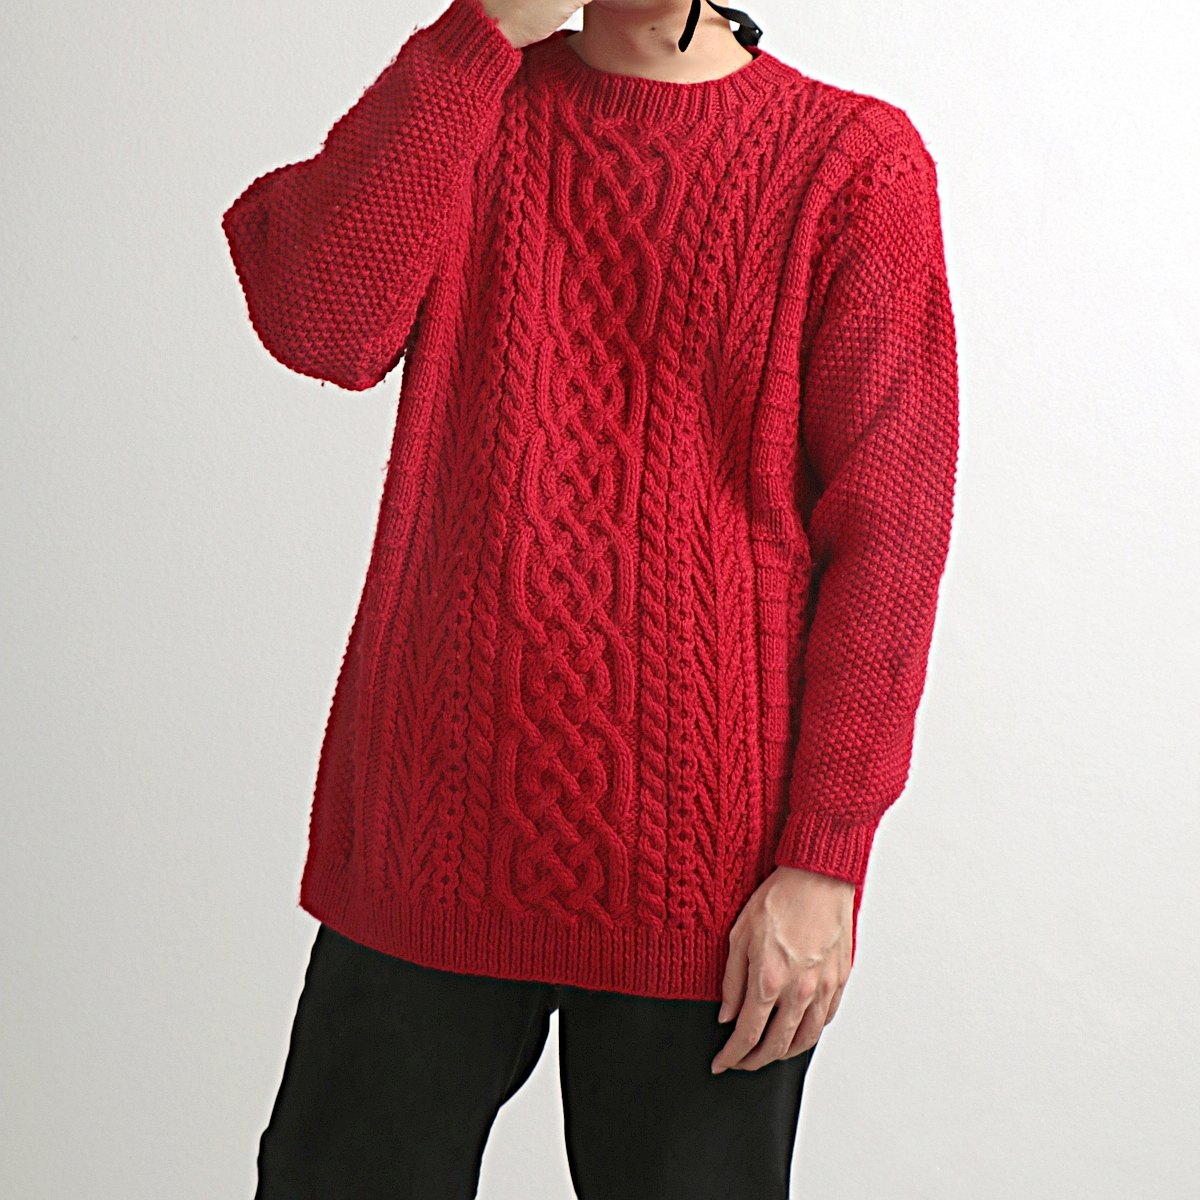 ELLEN TRACY hand knit アランニット ウールセーター 古着 used レッド 